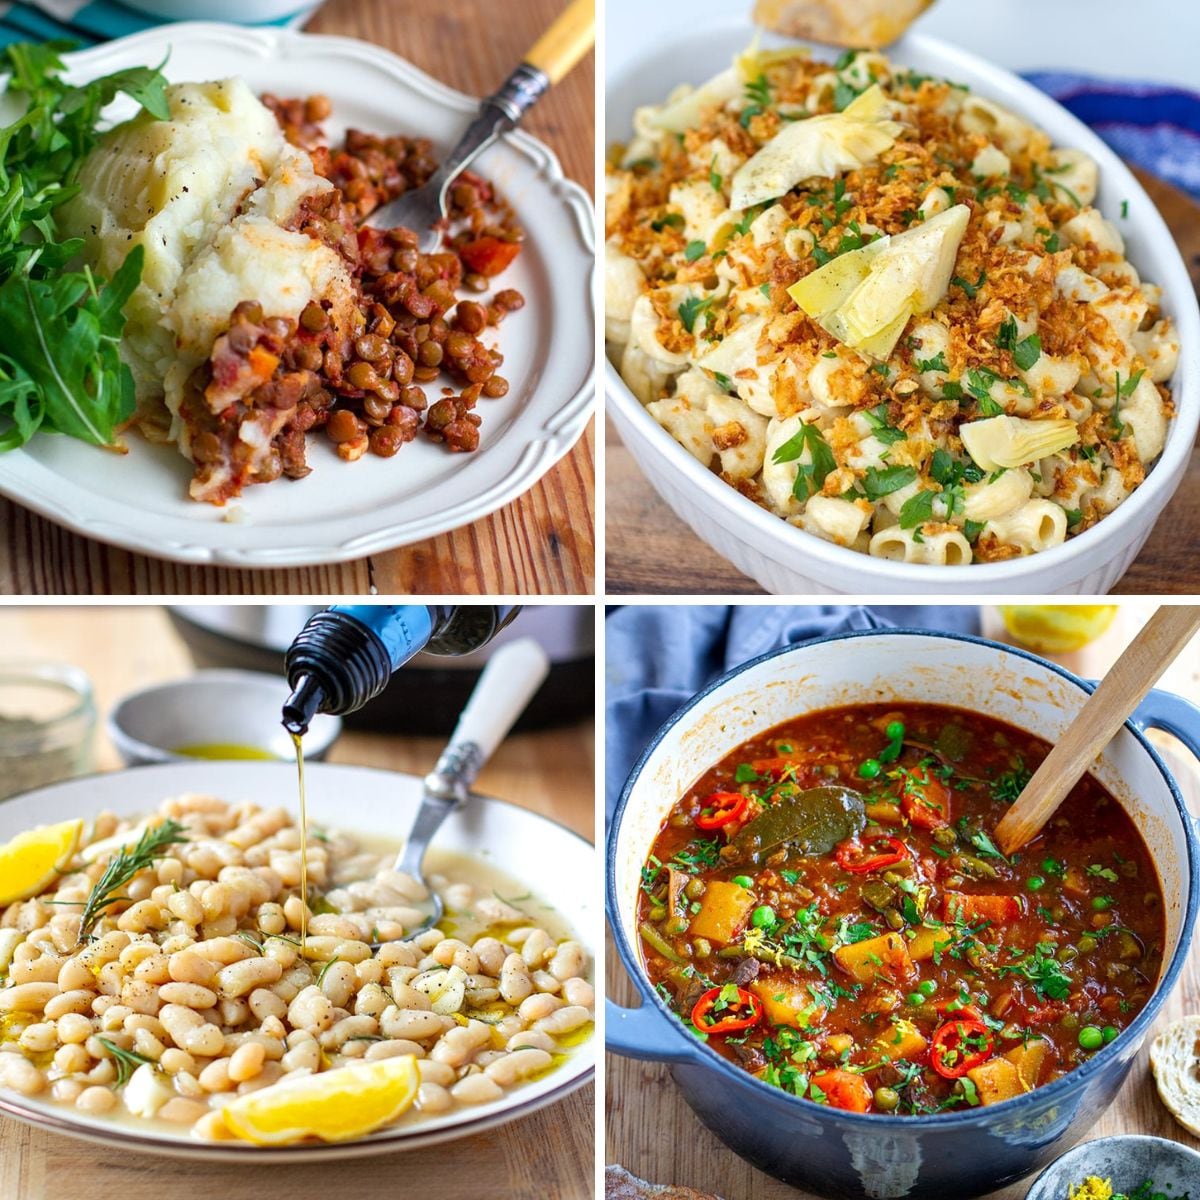 Instant Pot Vegan Thanksgiving Recipes